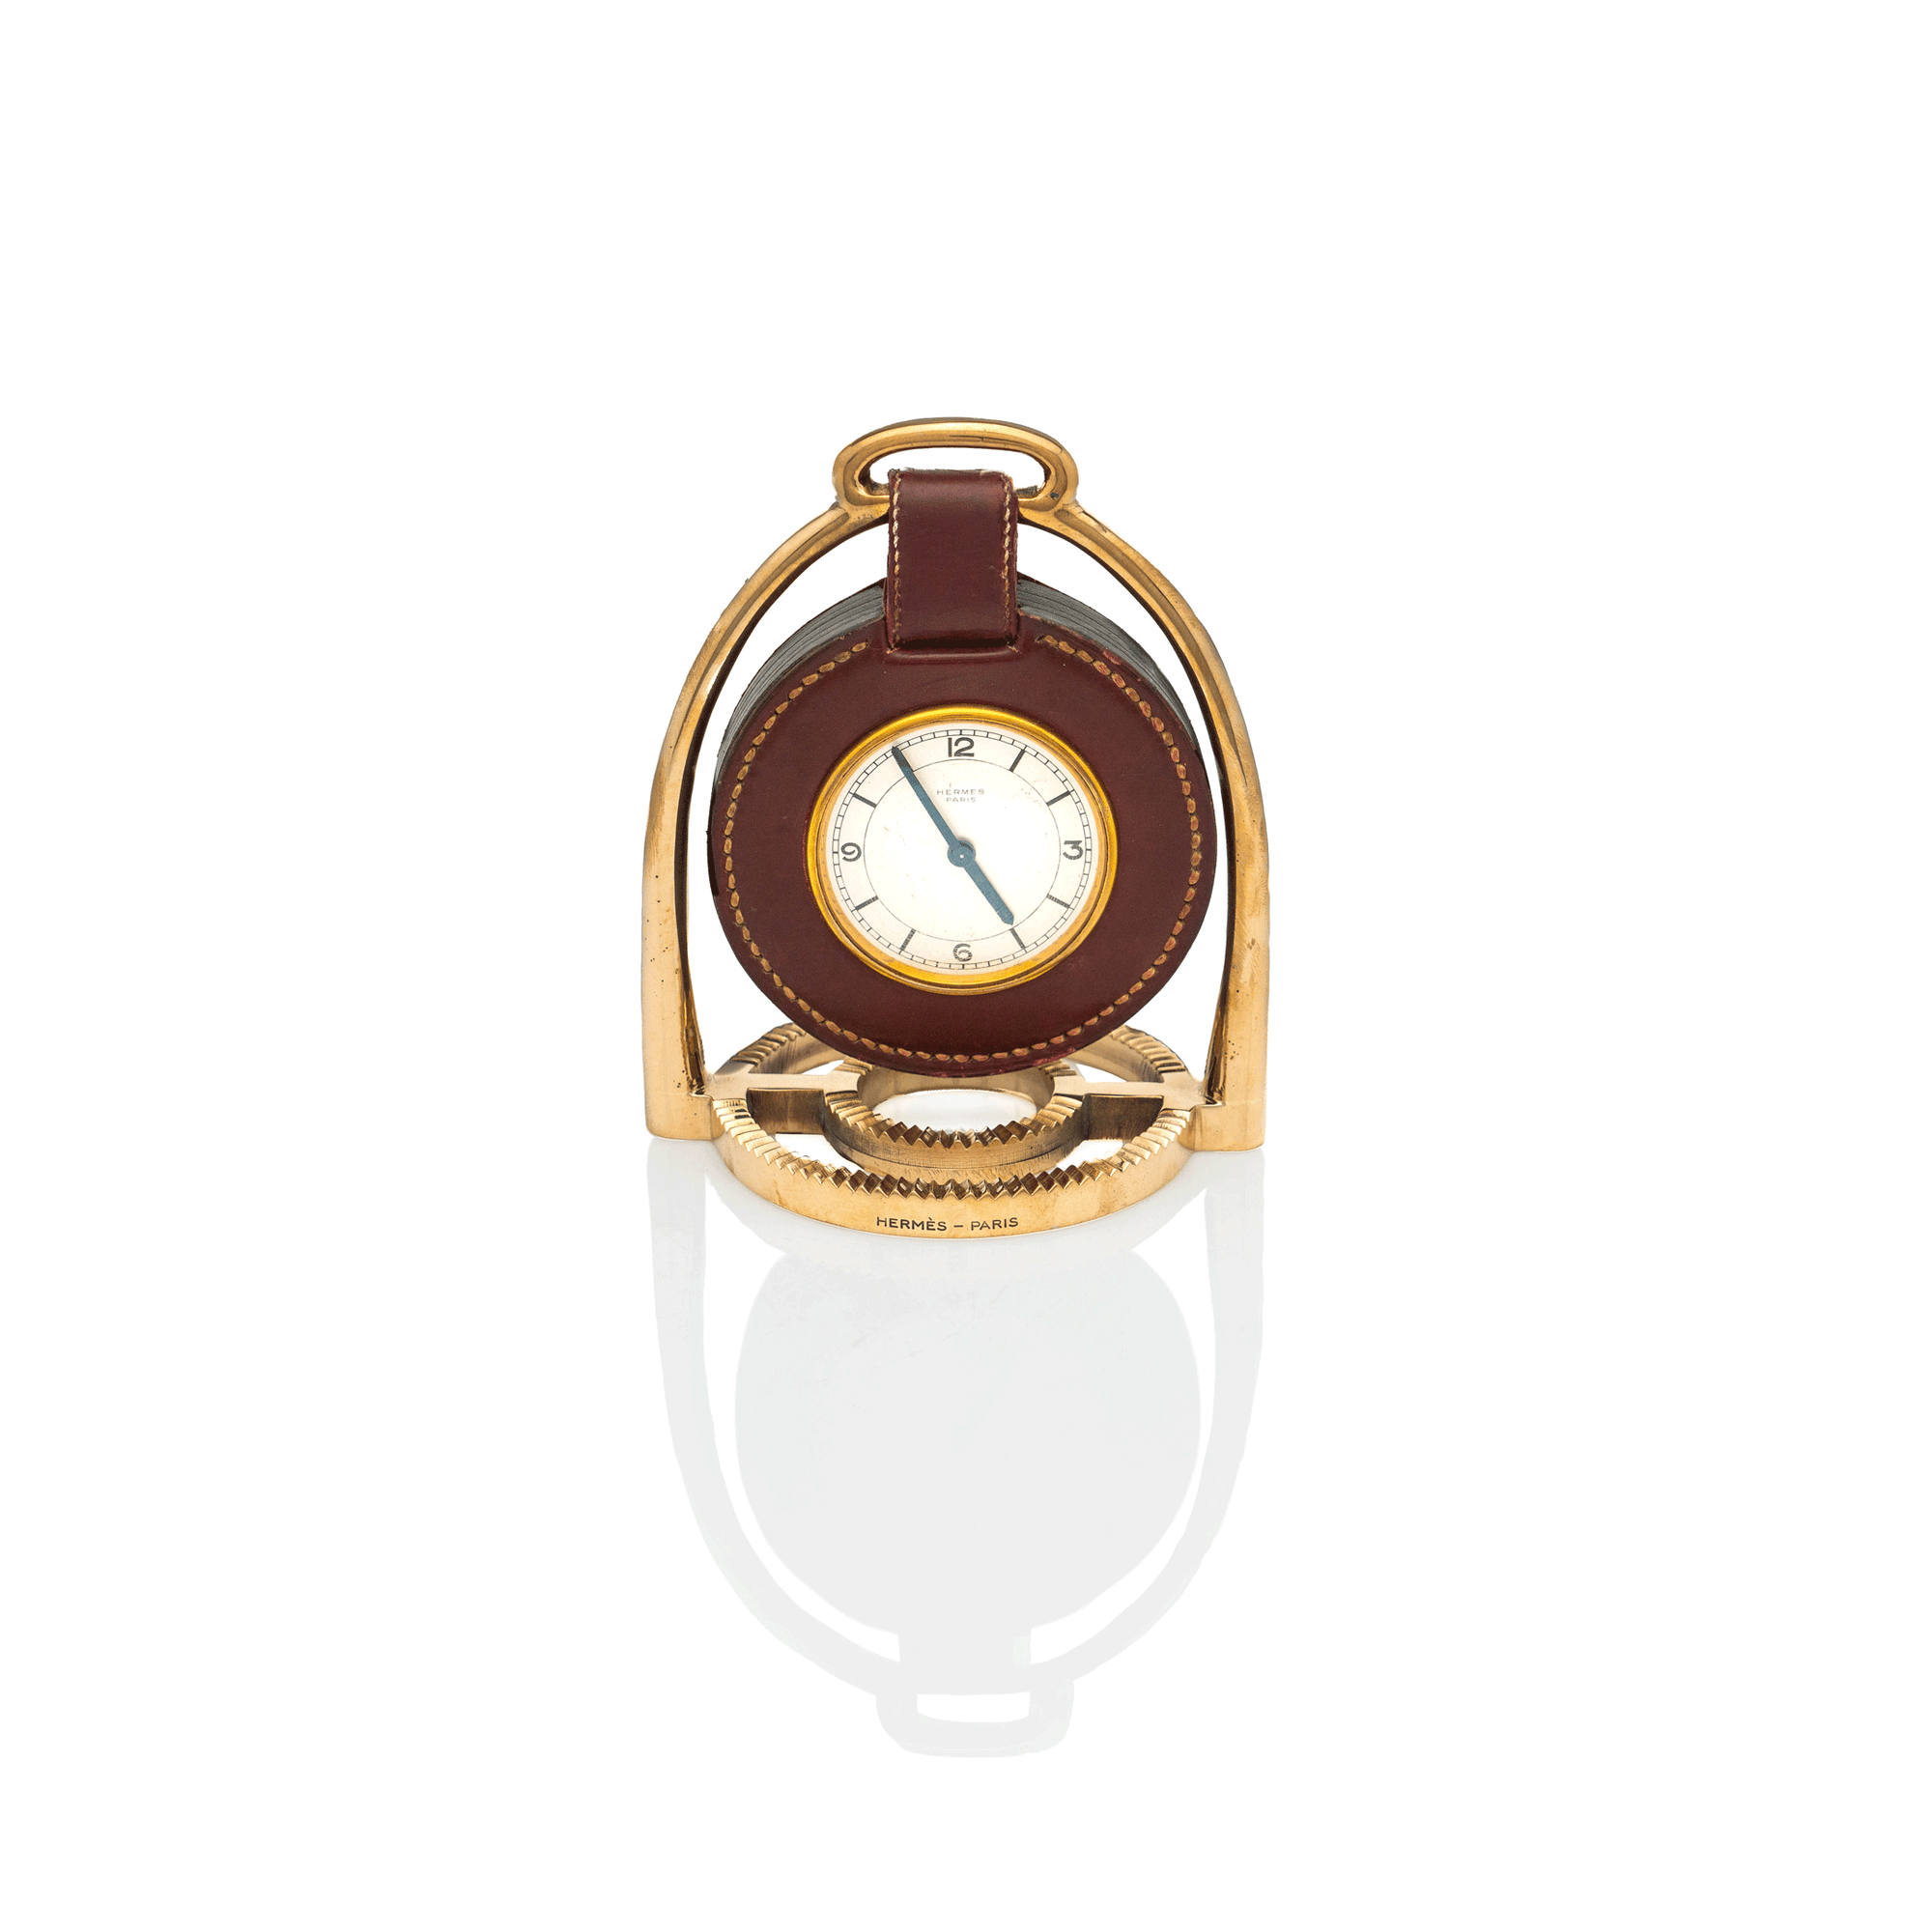 Hermes Stirrup Clock, Paul Dupre-Lafon